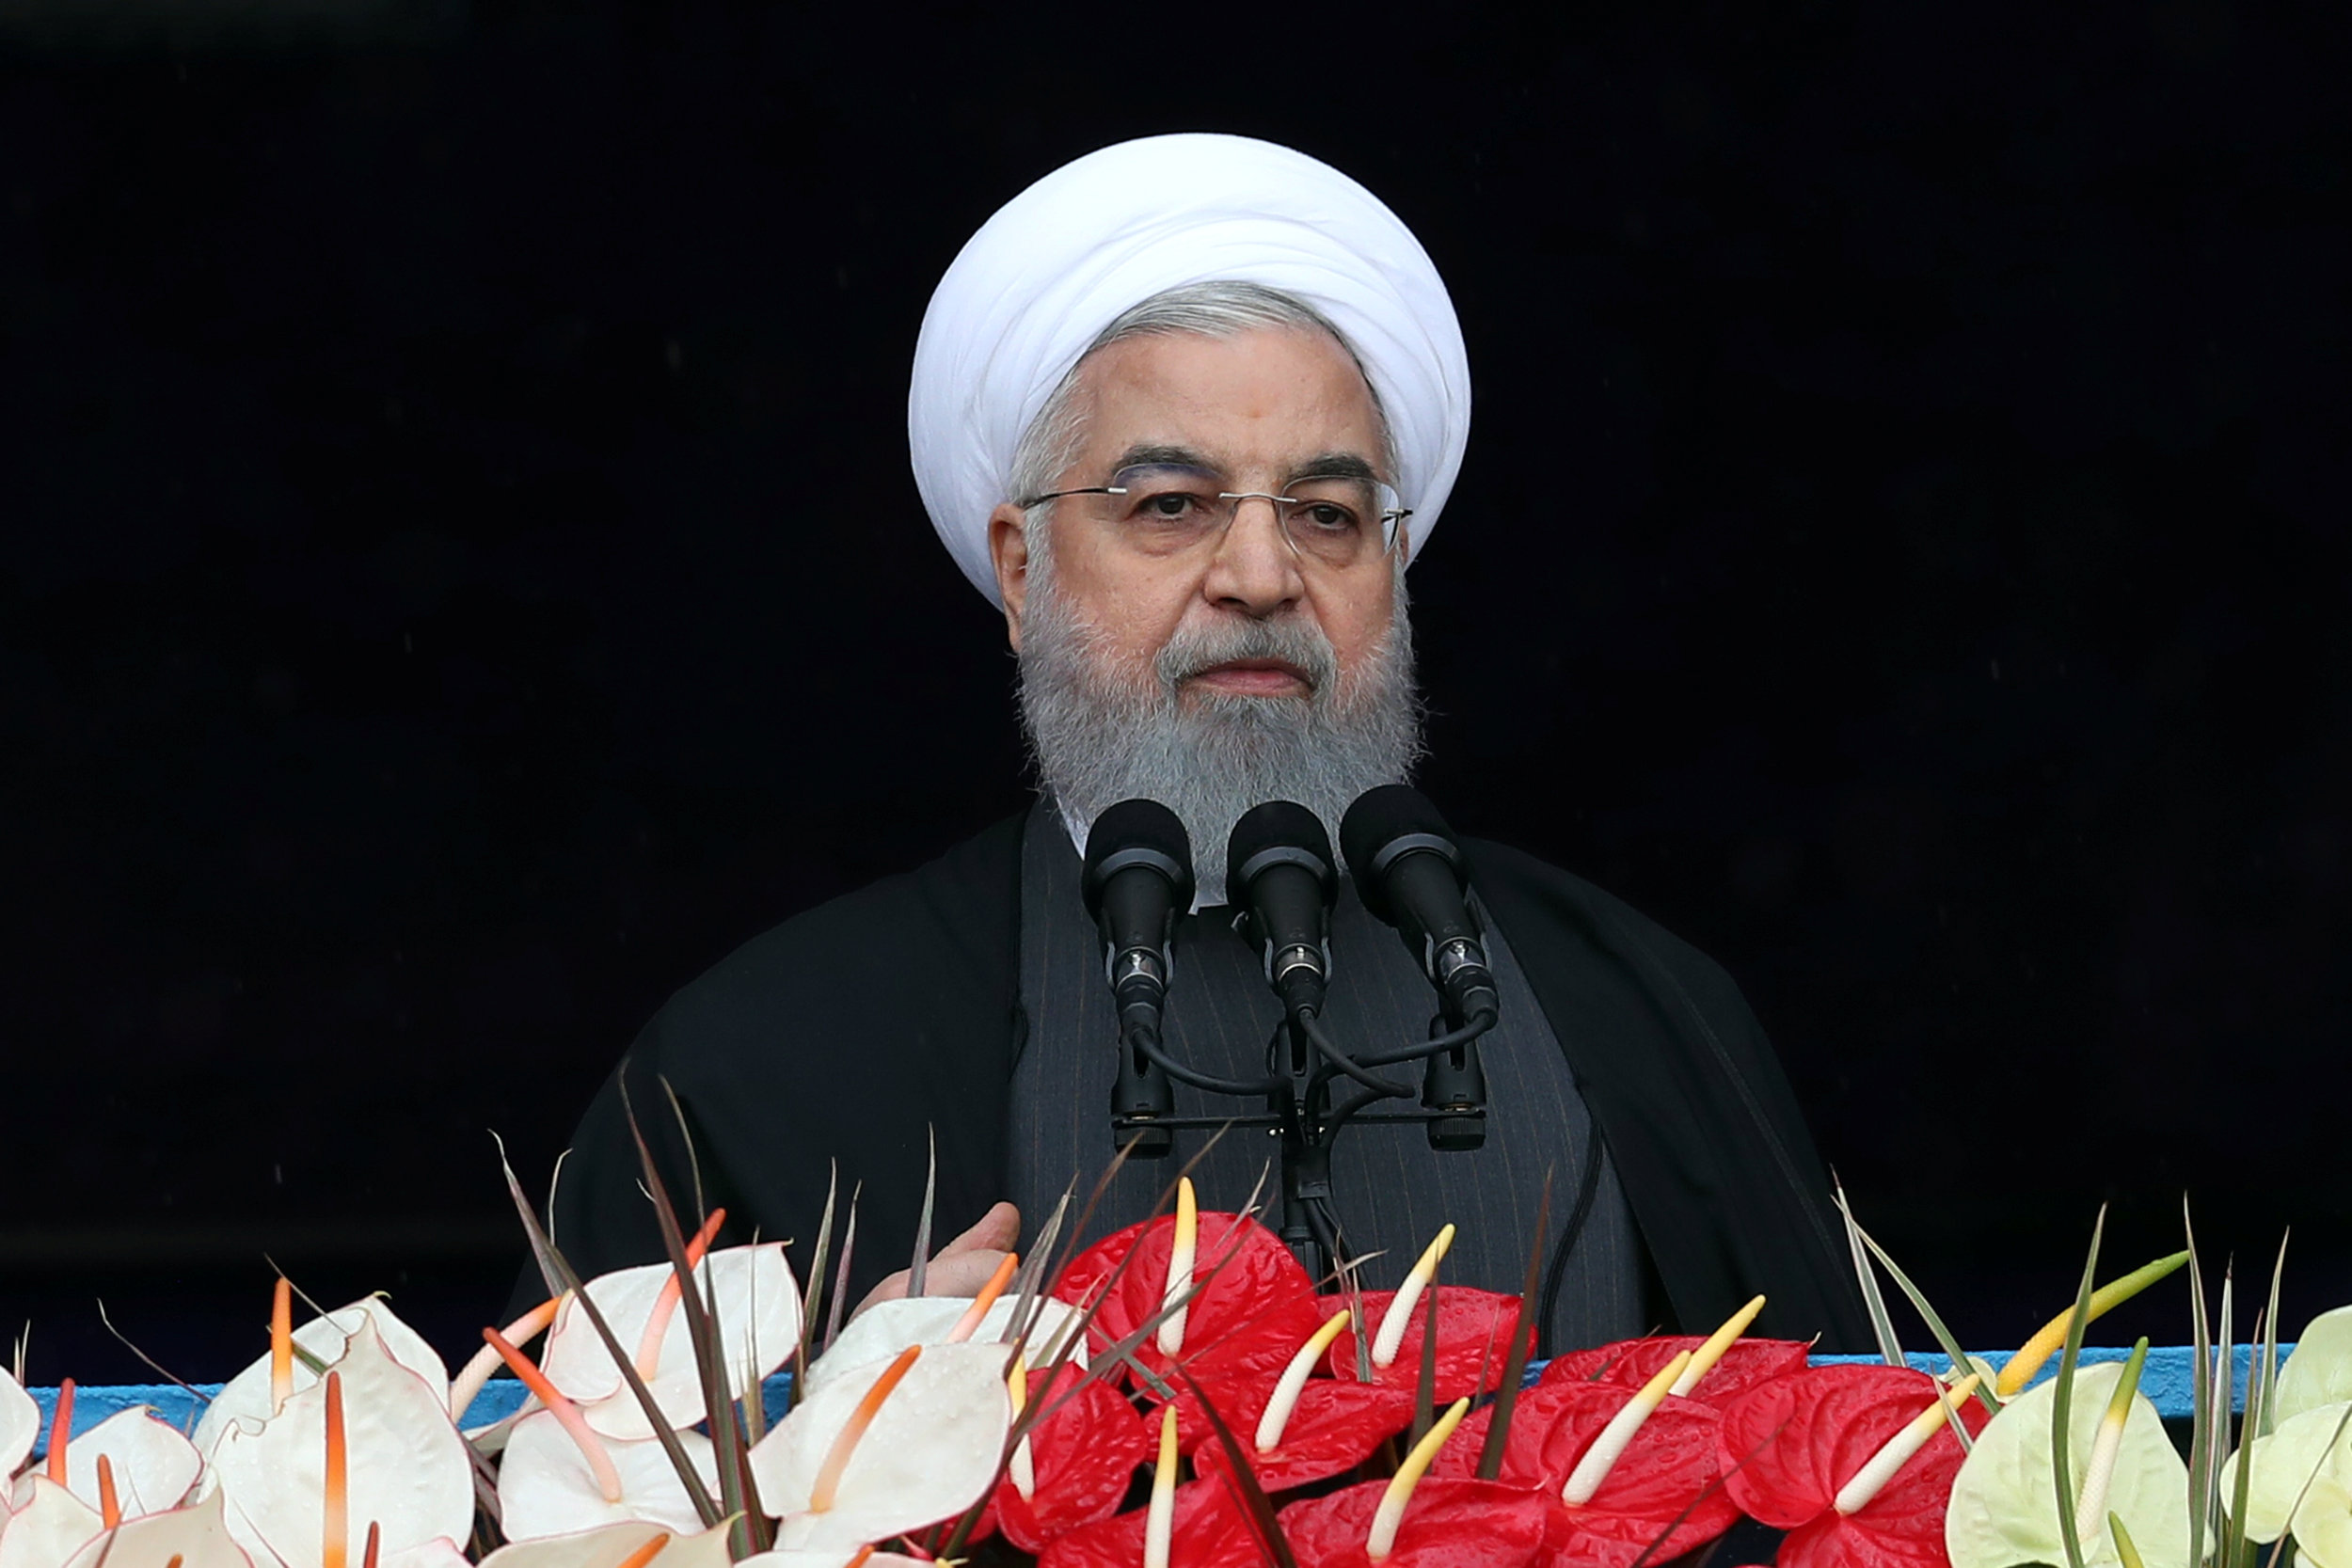 الرئيس الإيراني حسن روحاني يتحدث خلال احتفال بمناسبة الذكرى الأربعين للثورة الإسلامية في طهران. 11 فبراير 2019. رويترز